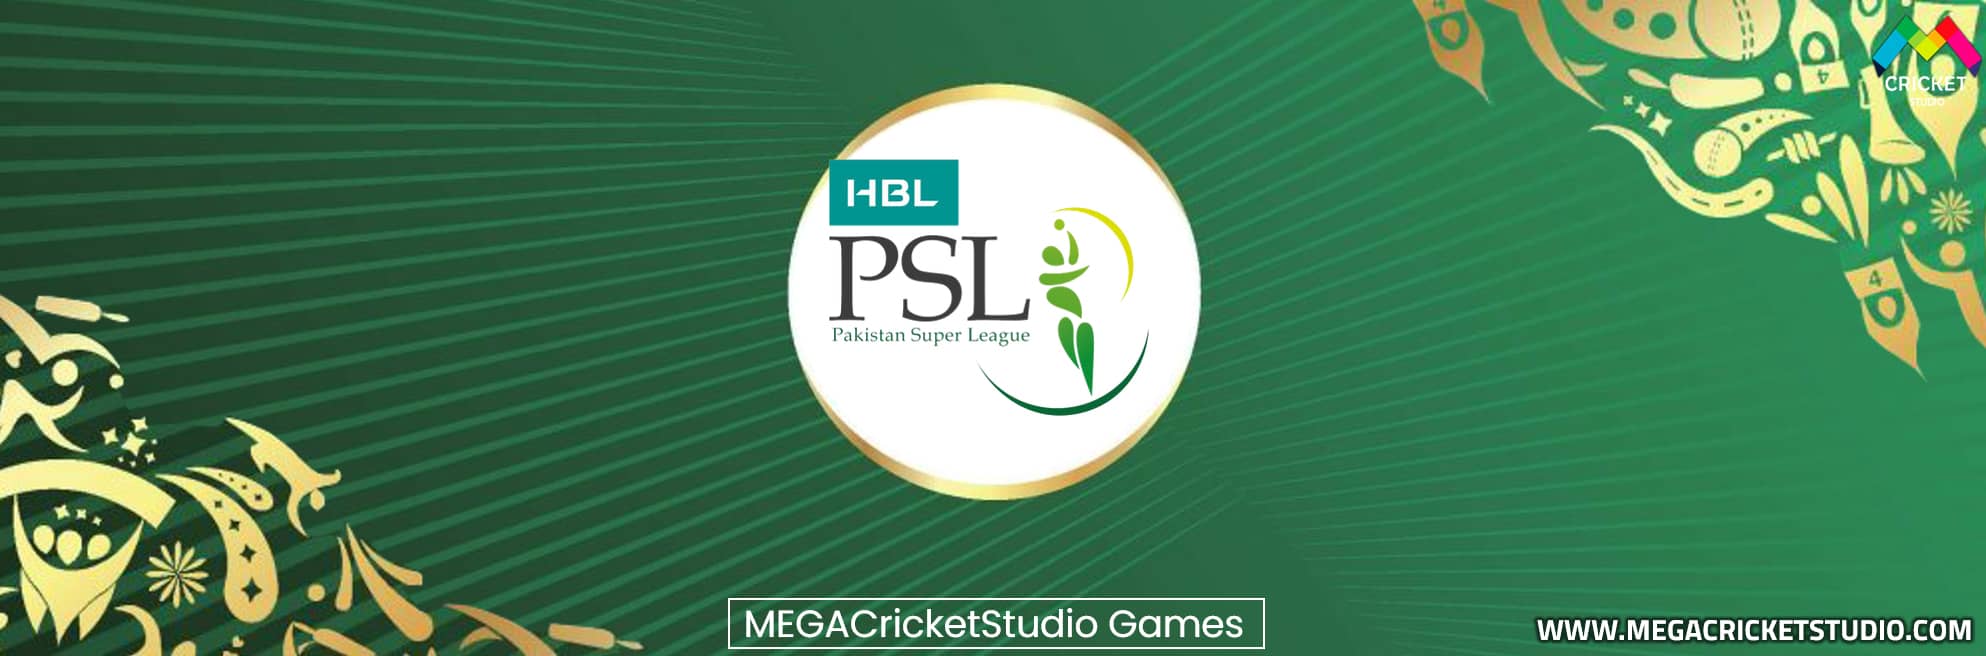 PSL4 Pakistan Super League 2019 Patch for EA Cricket 07